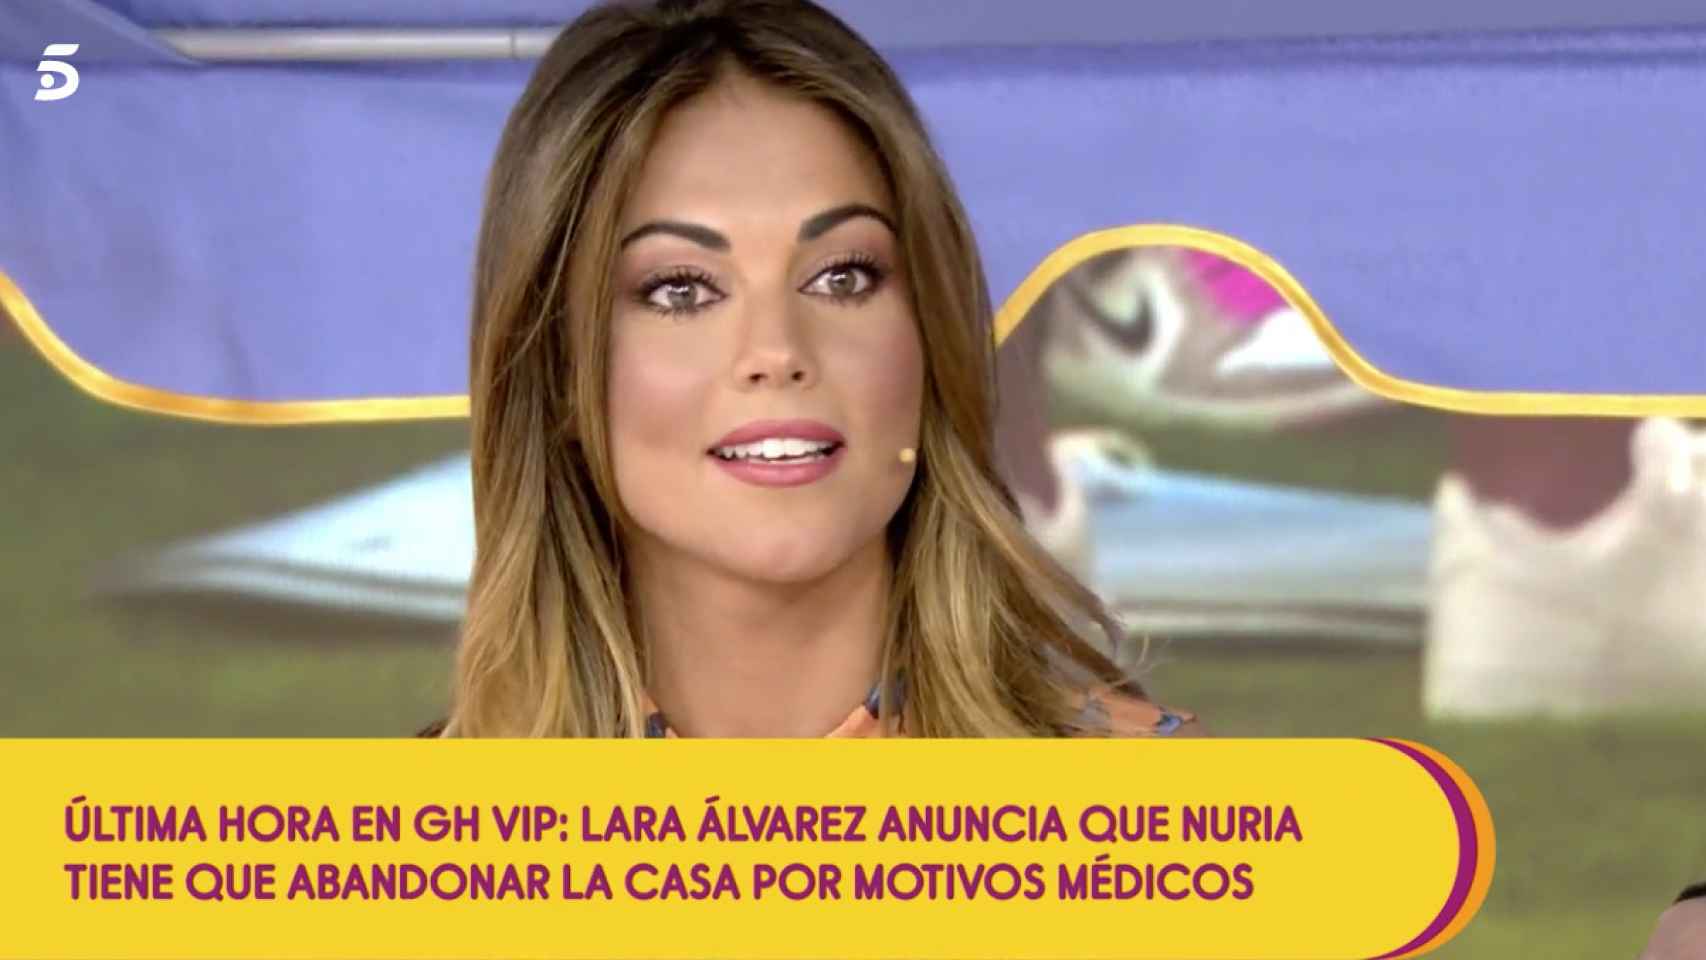 Lara Álvarez se queda en shock tras el comentario de Belén Esteban / MEDIASET